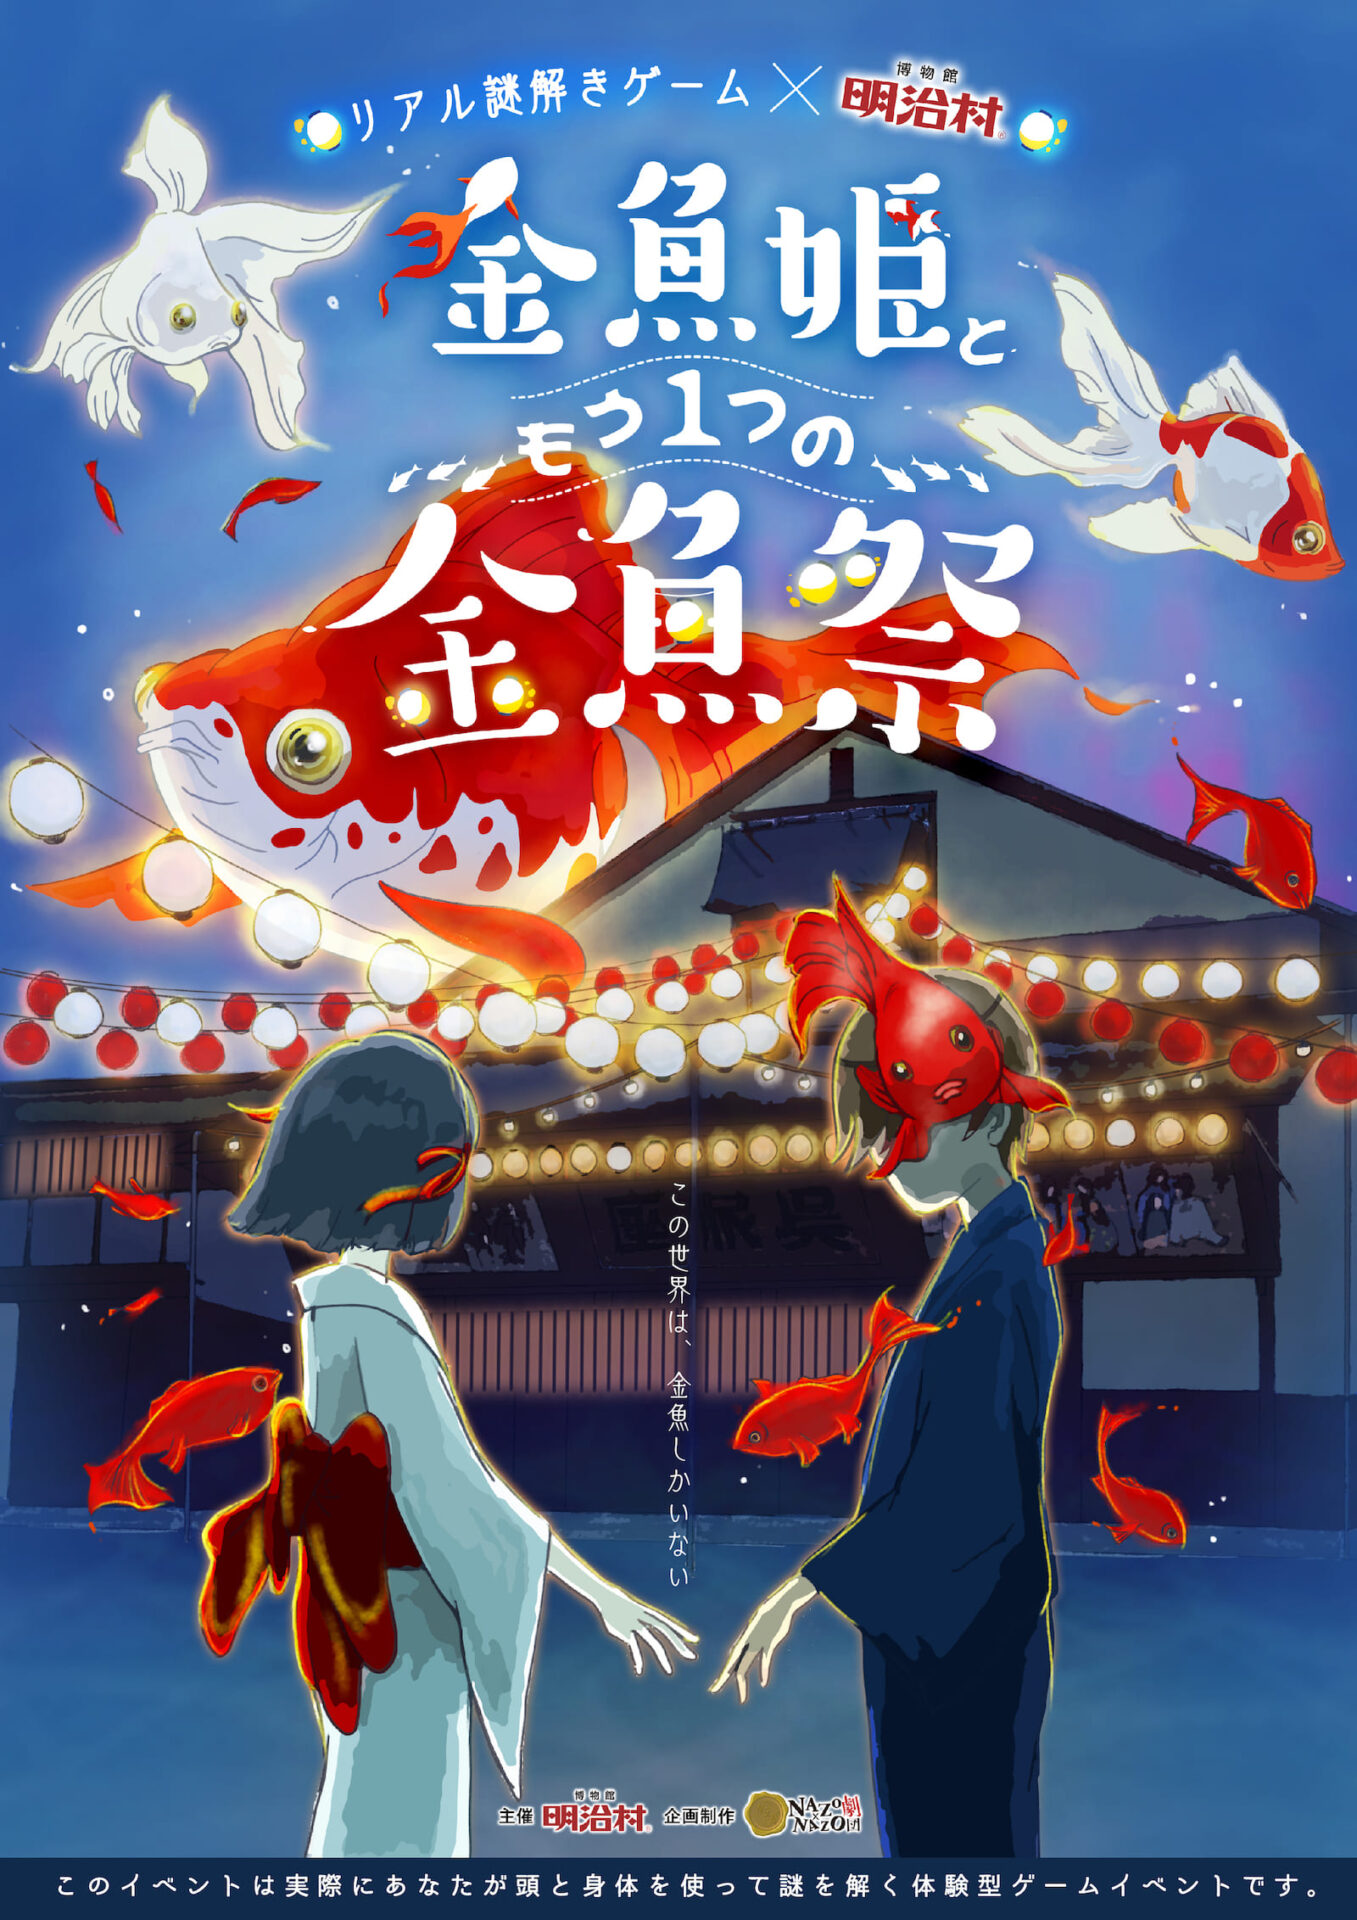 MV_リアル謎解きゲーム×博物館明治村「金魚姫ともう1つの金魚祭」